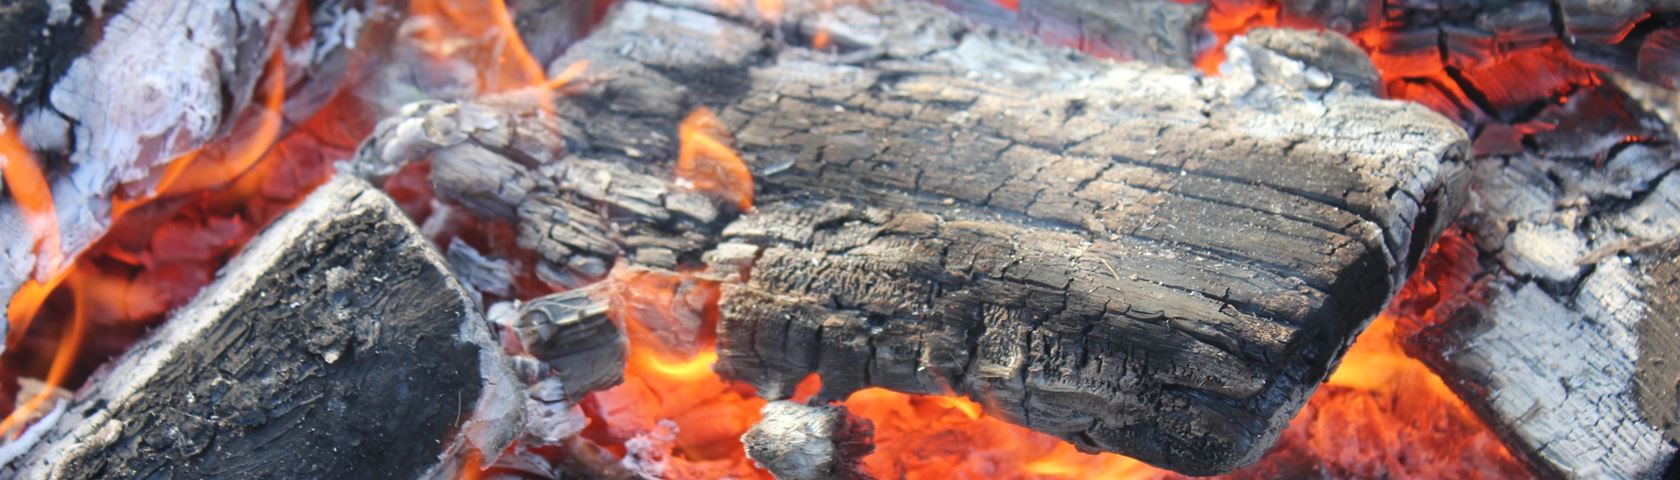 Wood Fire